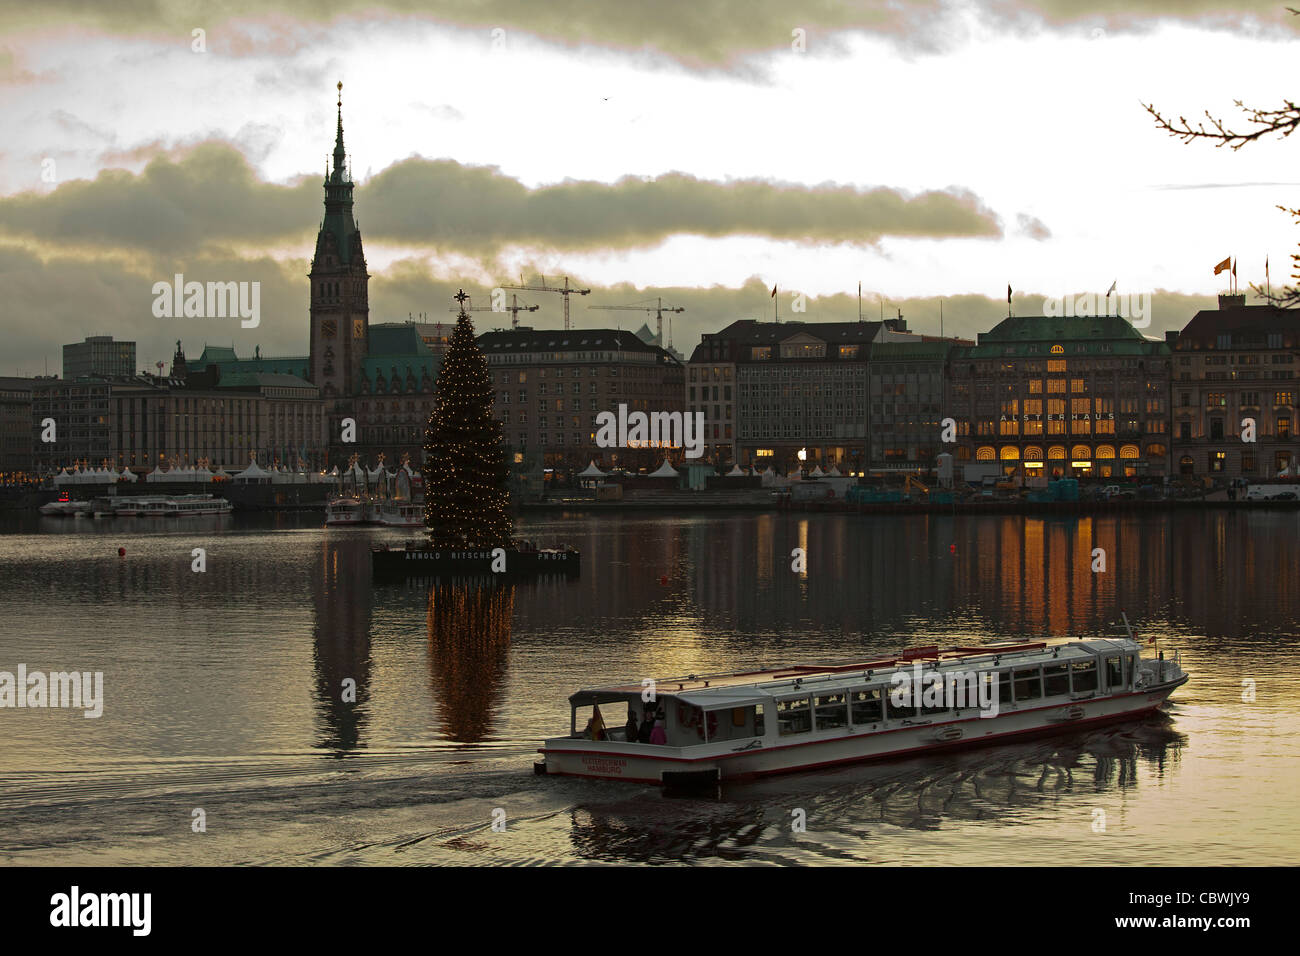 Vistas de Hamburgo con el Ayuntamiento, cruzando el lago Binnenalster (Alster interior) justo antes de Navidad Foto de stock